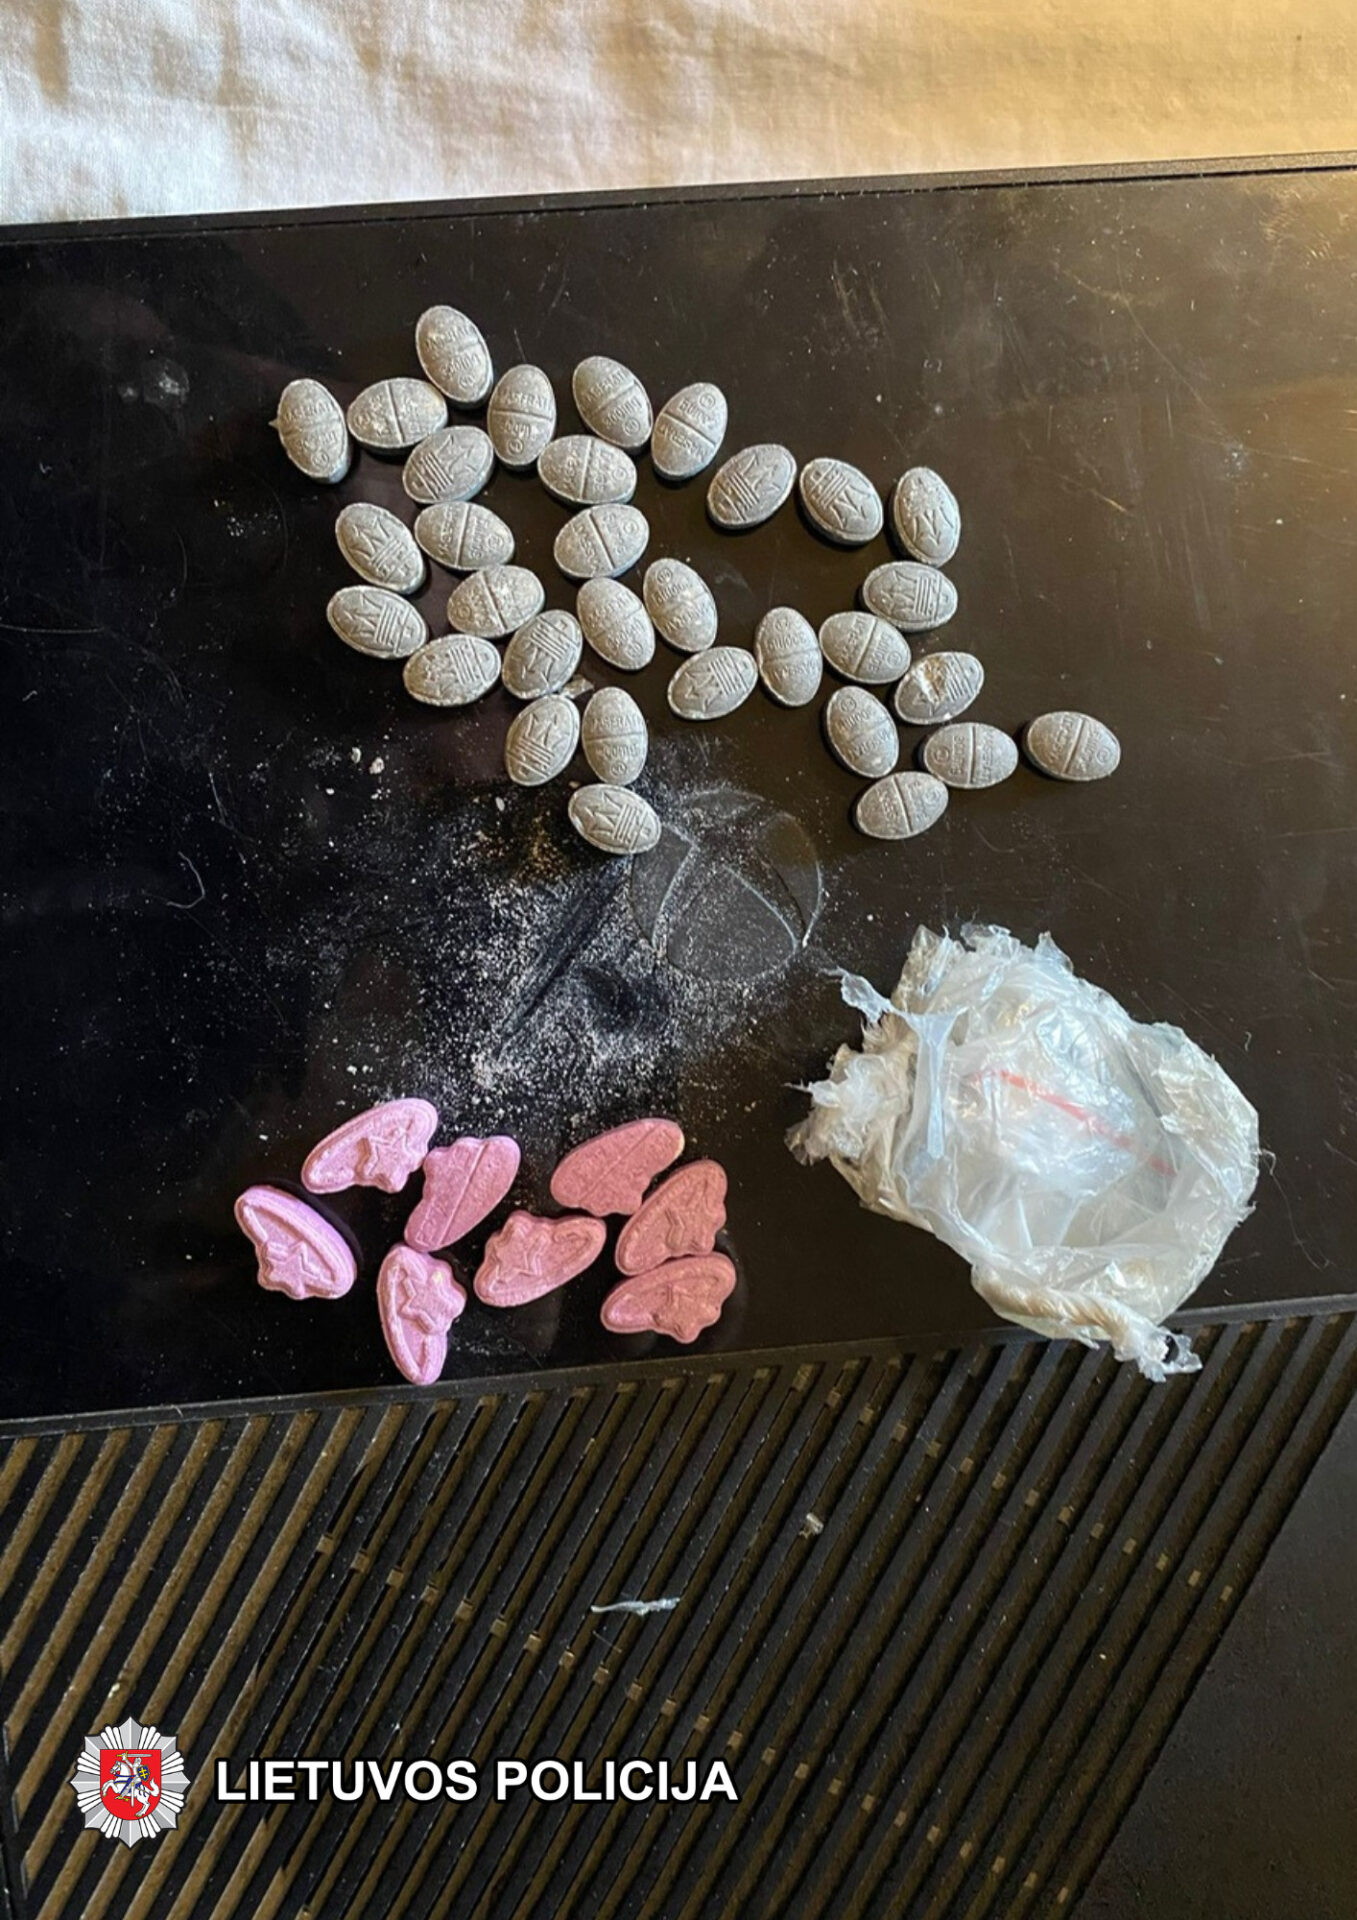 Marijampolės kriminalistų rastos narkotinės medžiagos